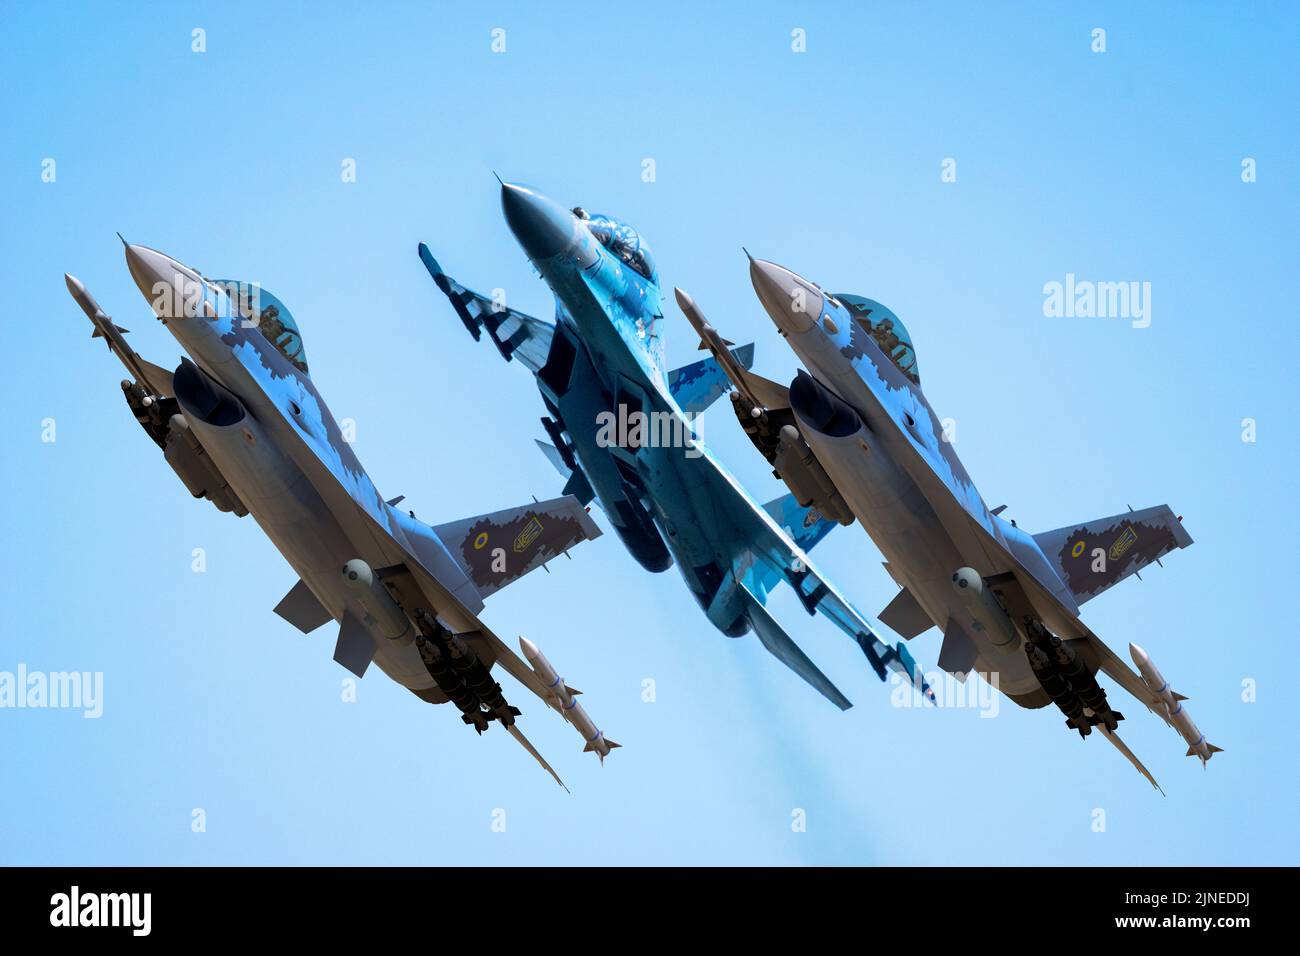 Combattants de l'Armée de l'Air ukrainienne:su-27 assisté par F-16s dans un camouflage hypothétique de l'aviation militaire ukrainienne Banque D'Images